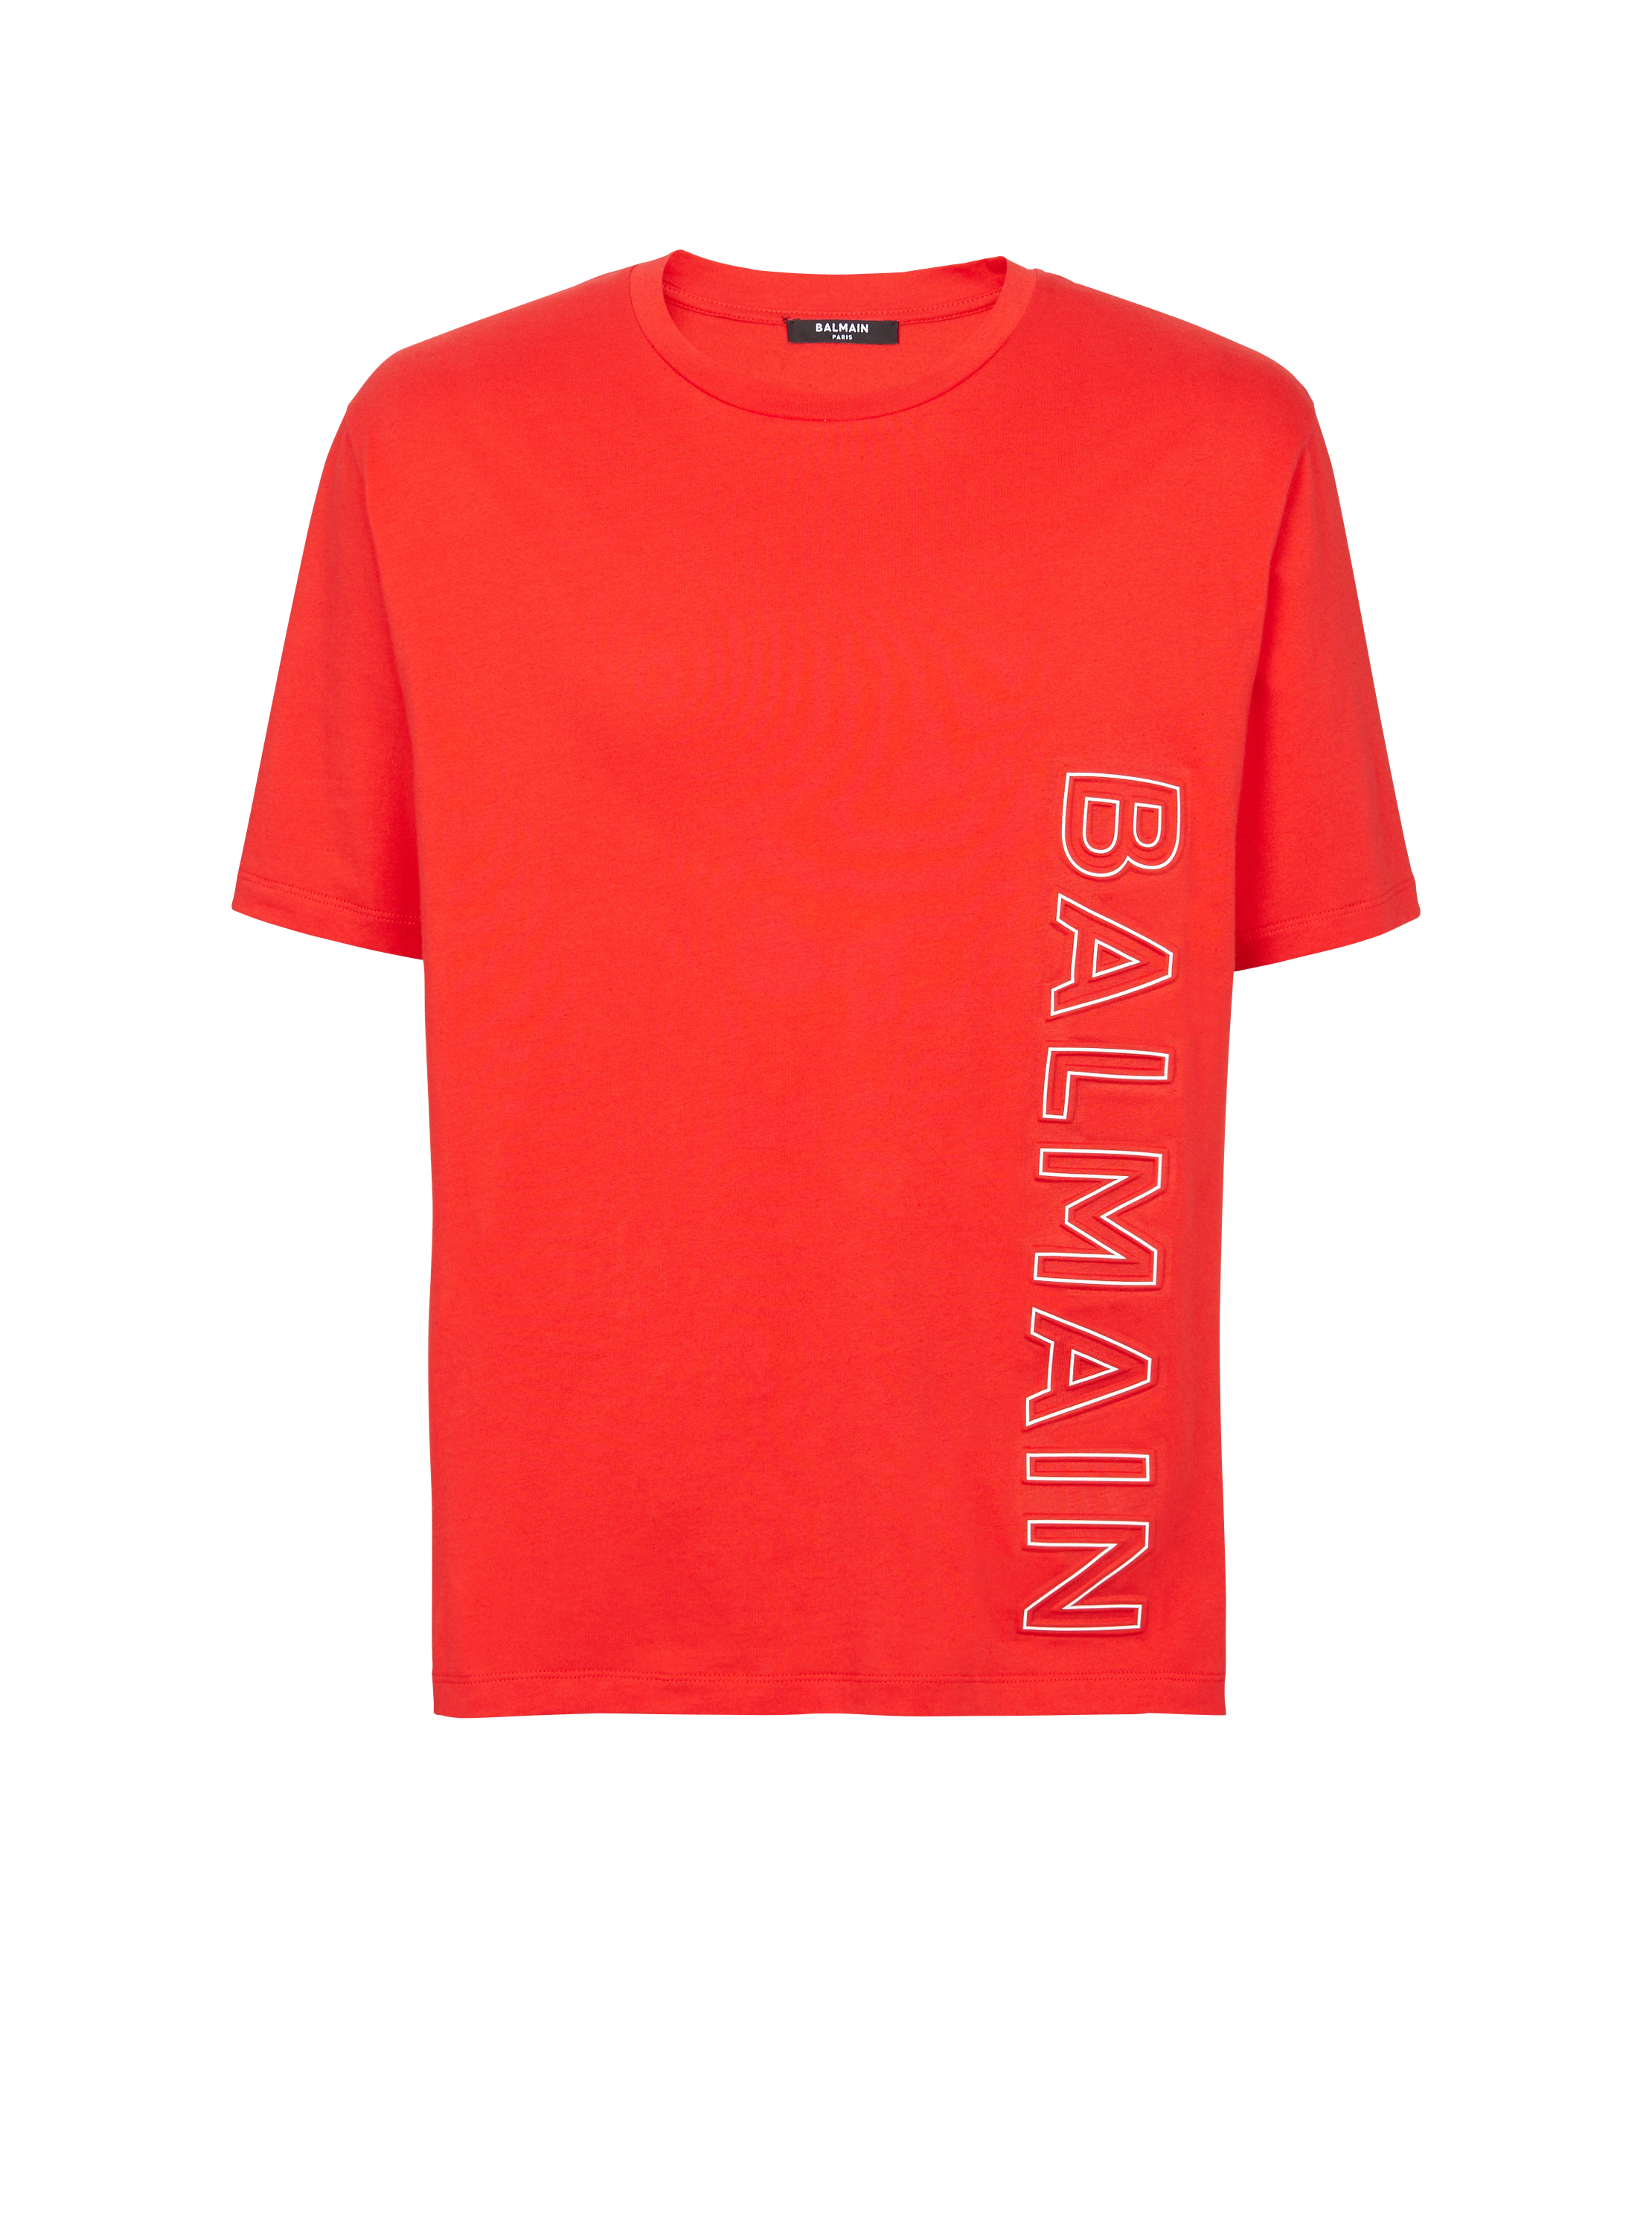 Embossed Balmain T-shirt, red, hi-res